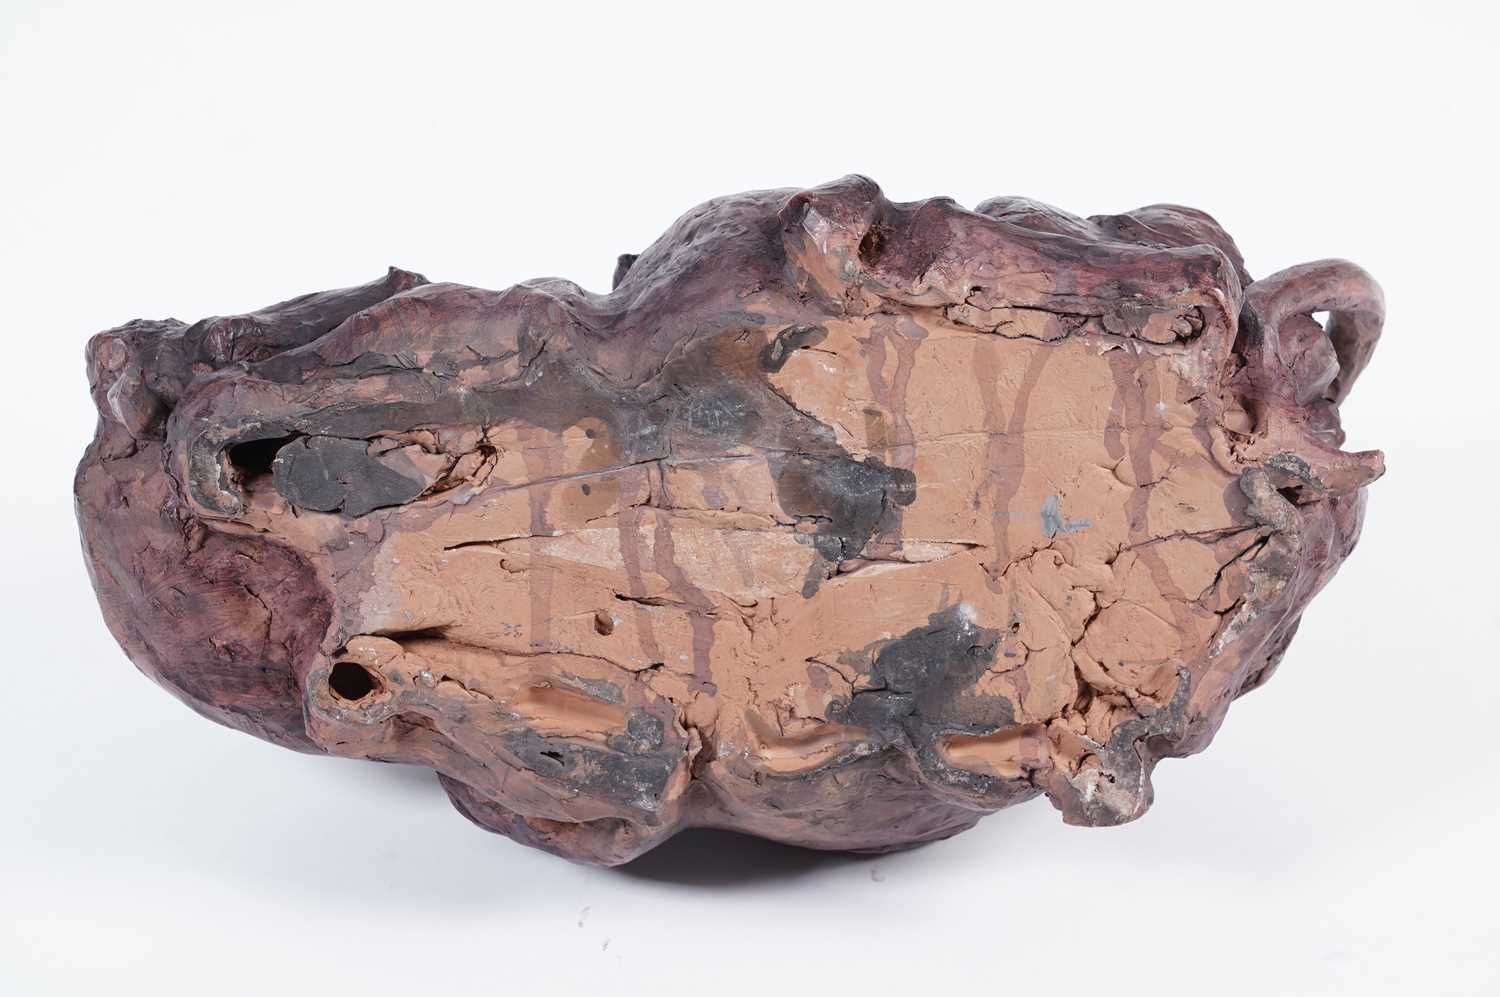 Lisa Delarny - Cowskin Handbag | clay sculpture - Image 2 of 8